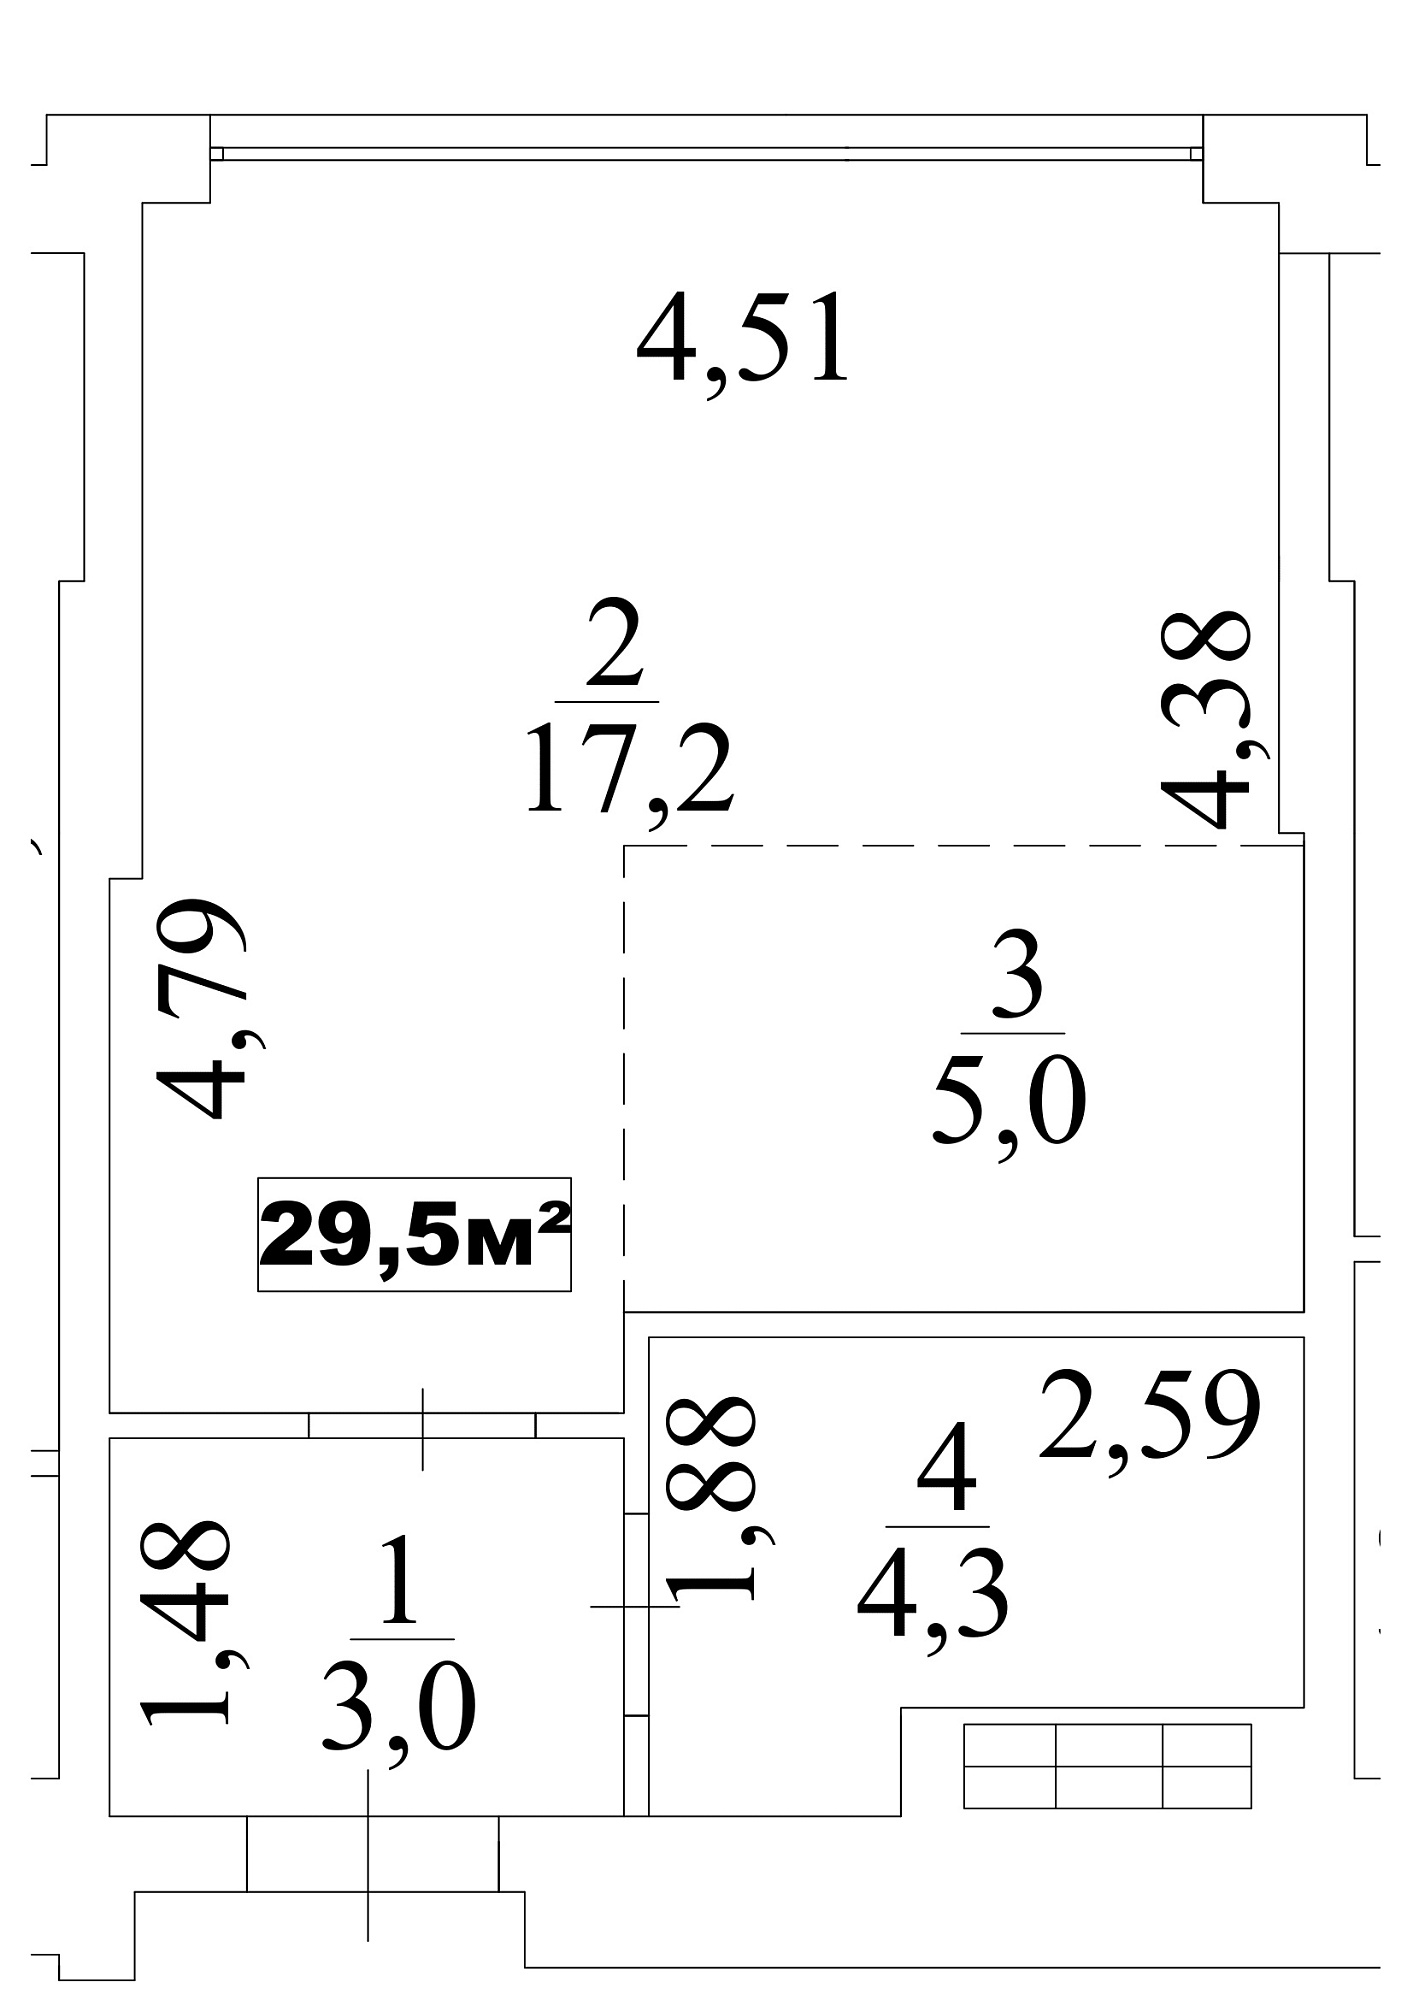 Планування Smart-квартира площею 29.5м2, AB-10-04/00032.